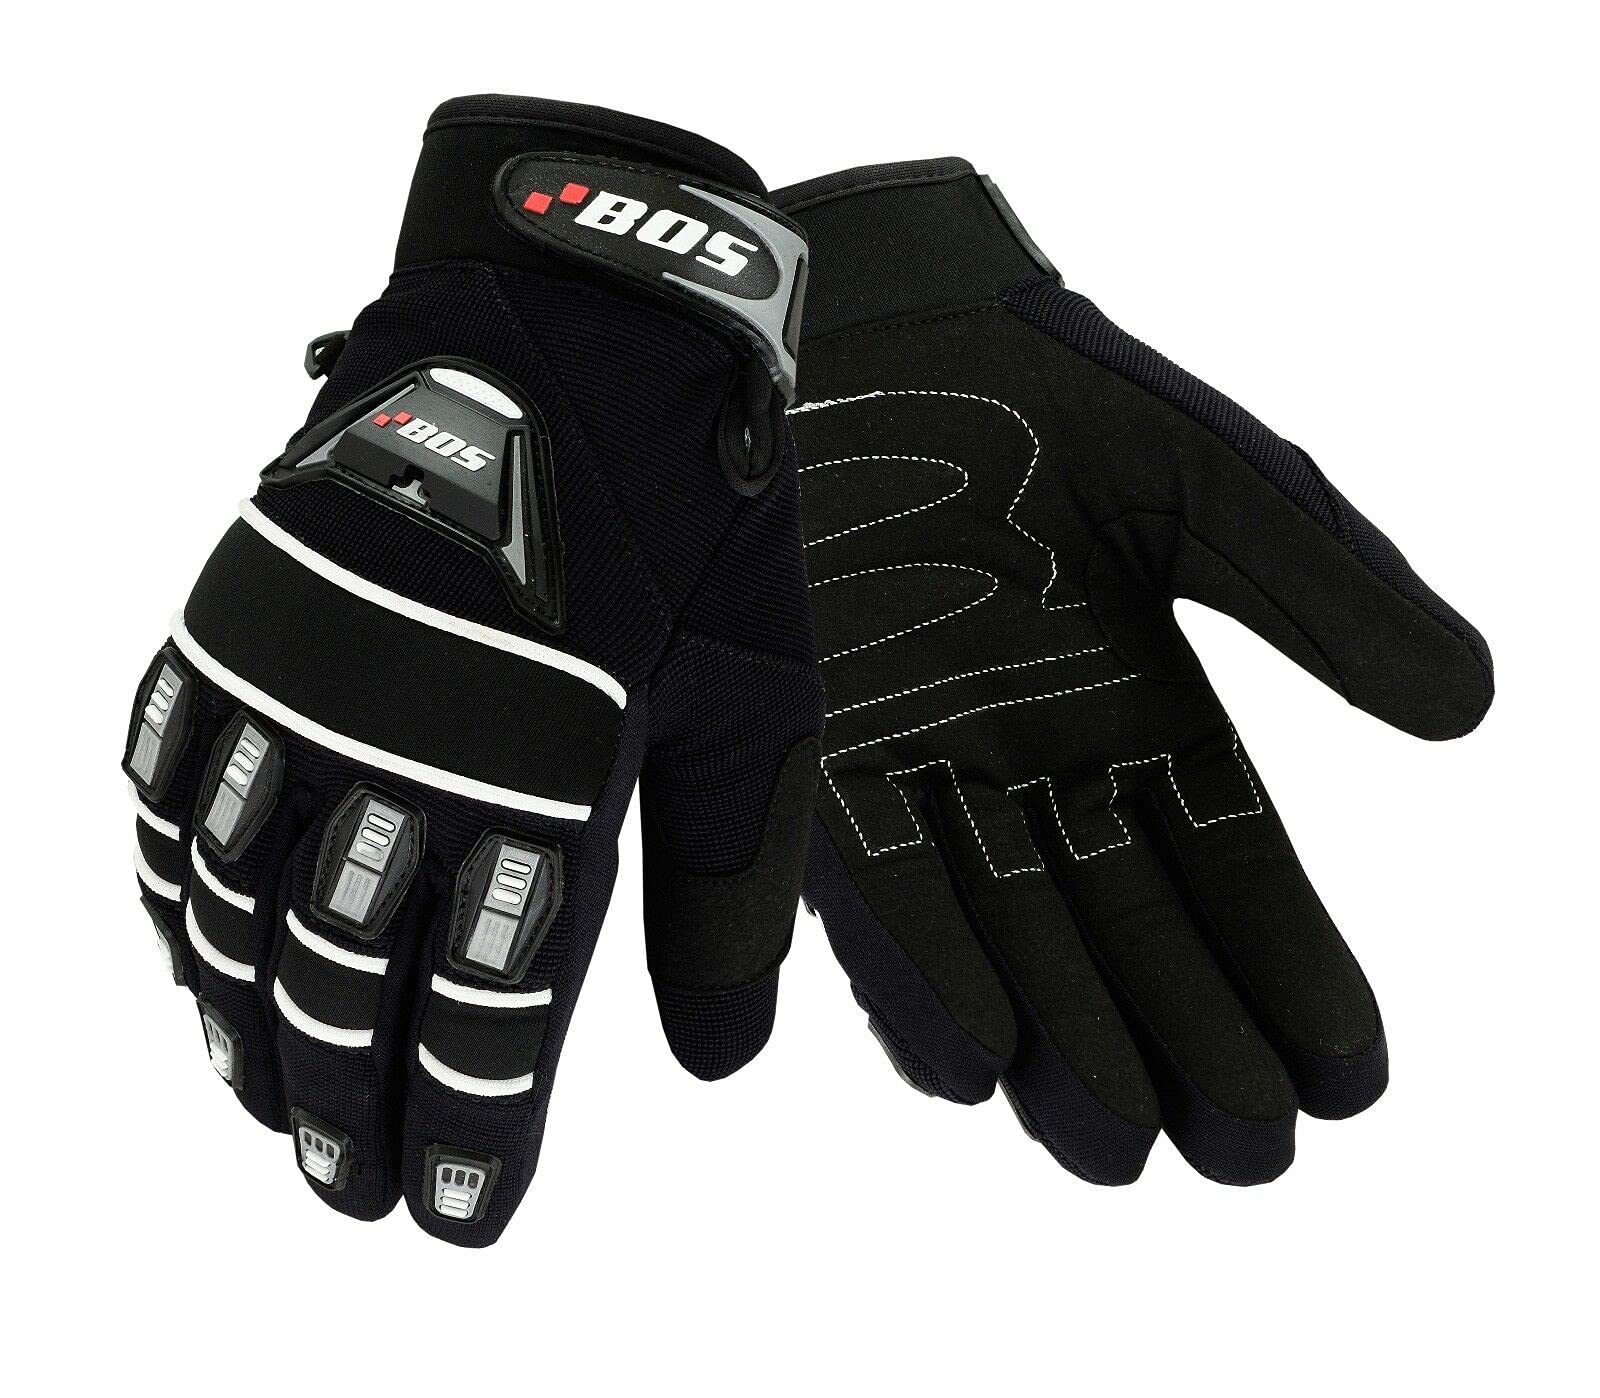 Motorradhandschuhe Fahrrad Sport Gloves Sommer Motorrad Handschuhe XS-3XL (Schwarz, 3XL)